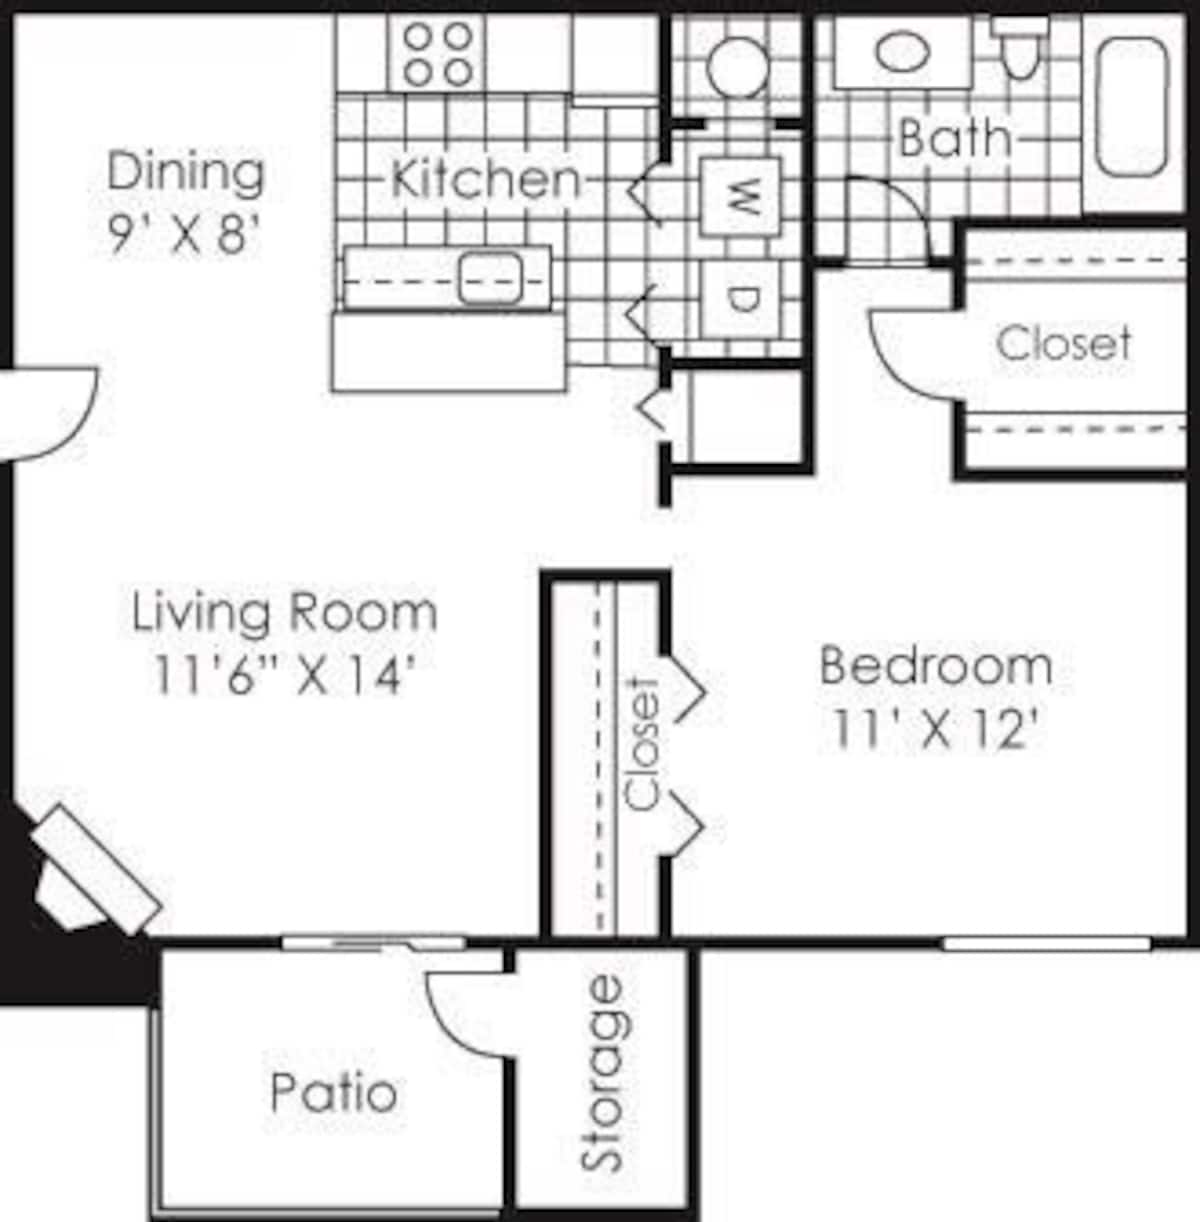 Floorplan diagram for Albemarle, showing 1 bedroom